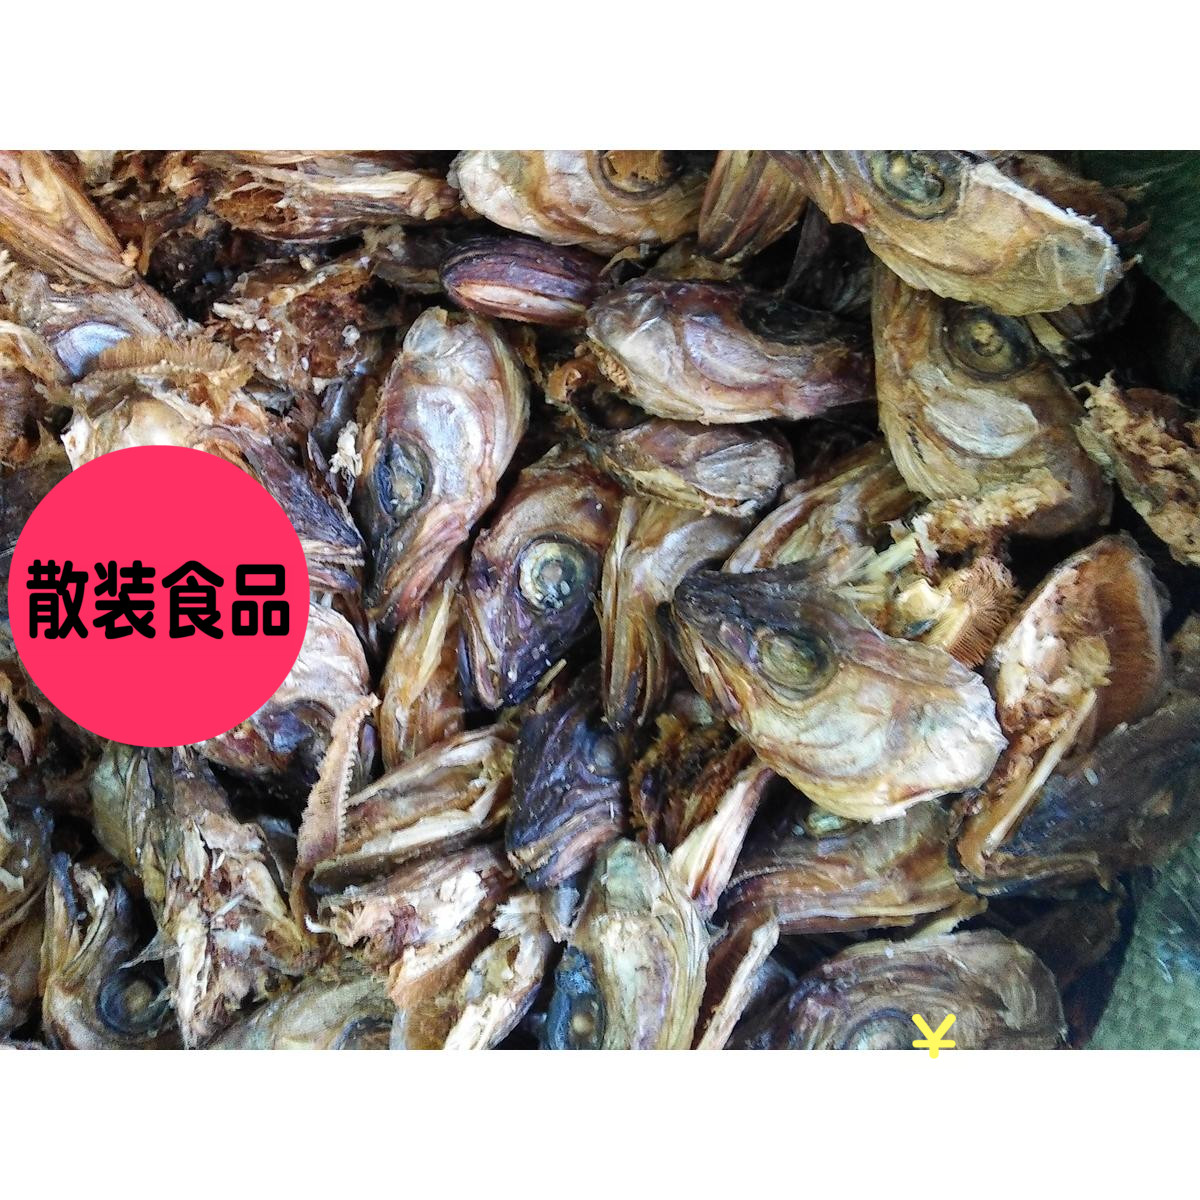 3斤包邮 北朝鲜明太鱼头 散装食品 干明太鱼头 做汤用500g 饭店用